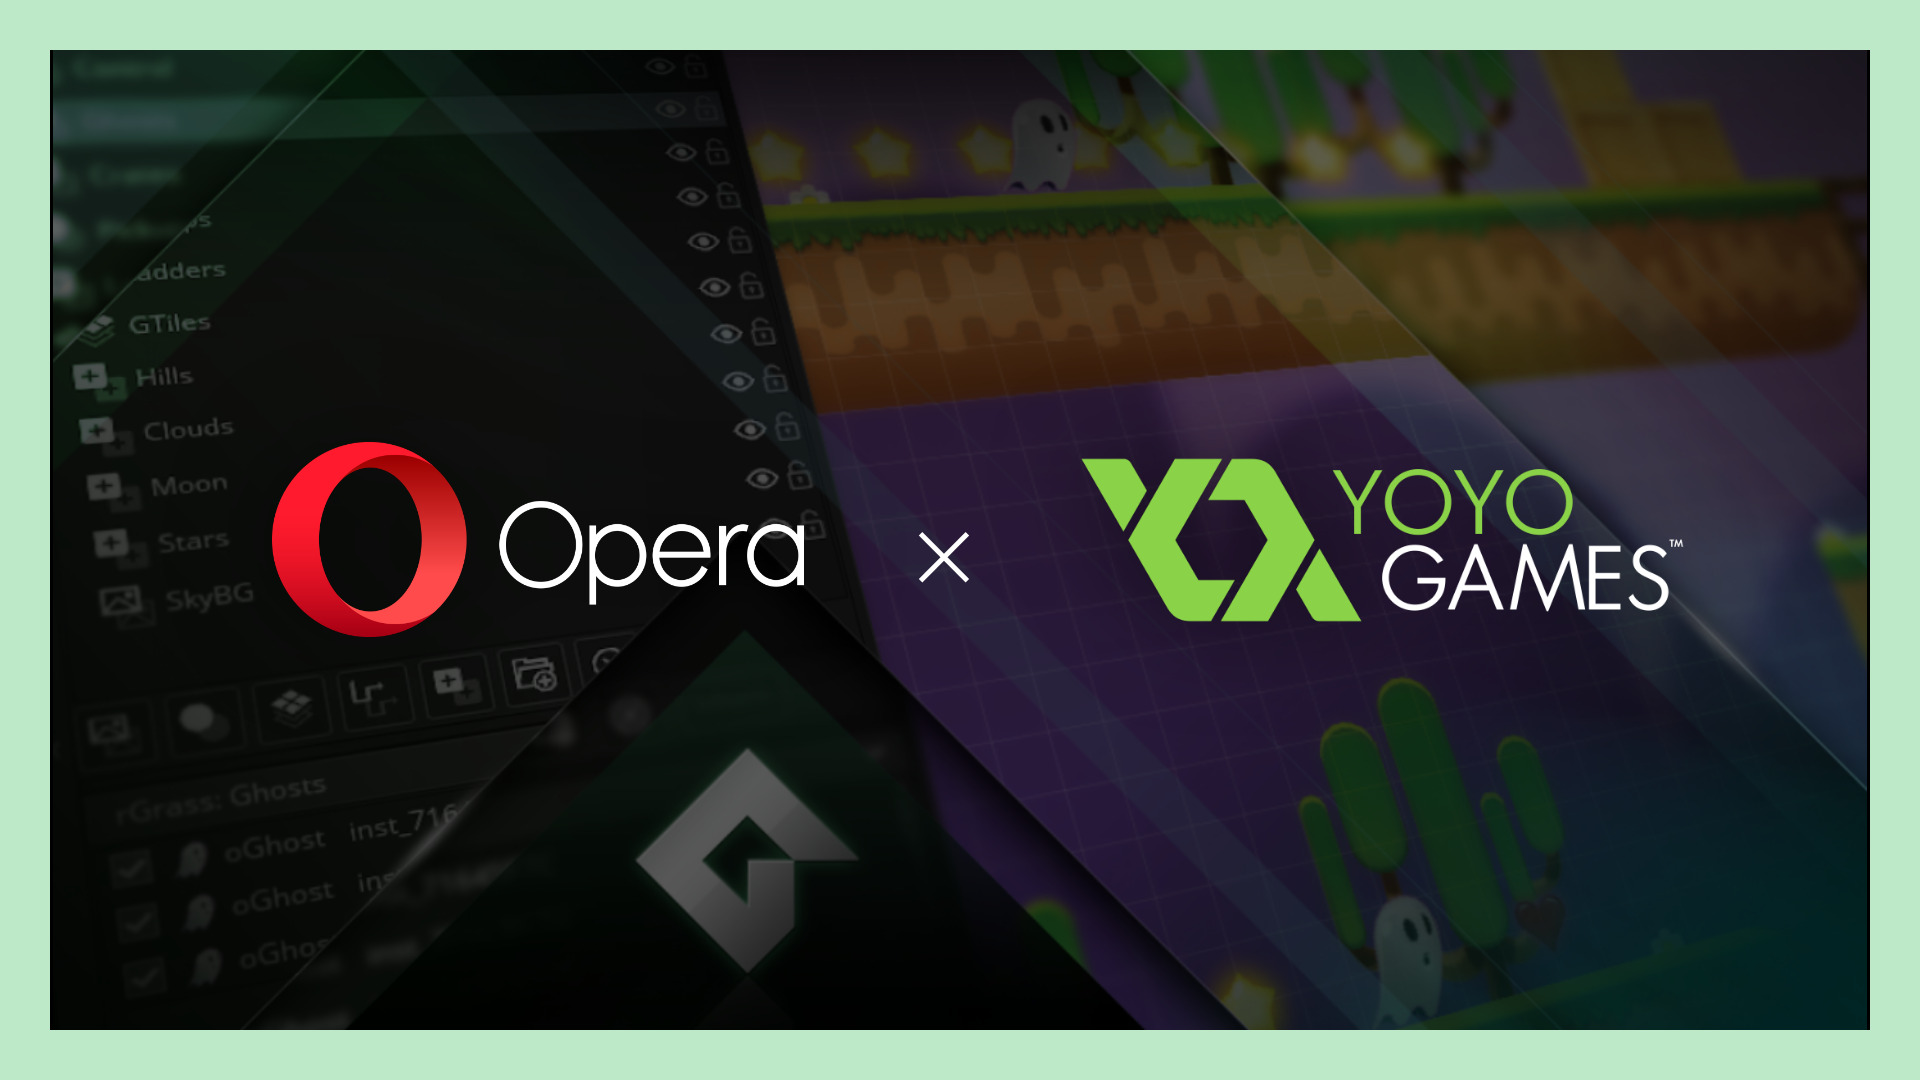 alt="Opera x YoYo Games"